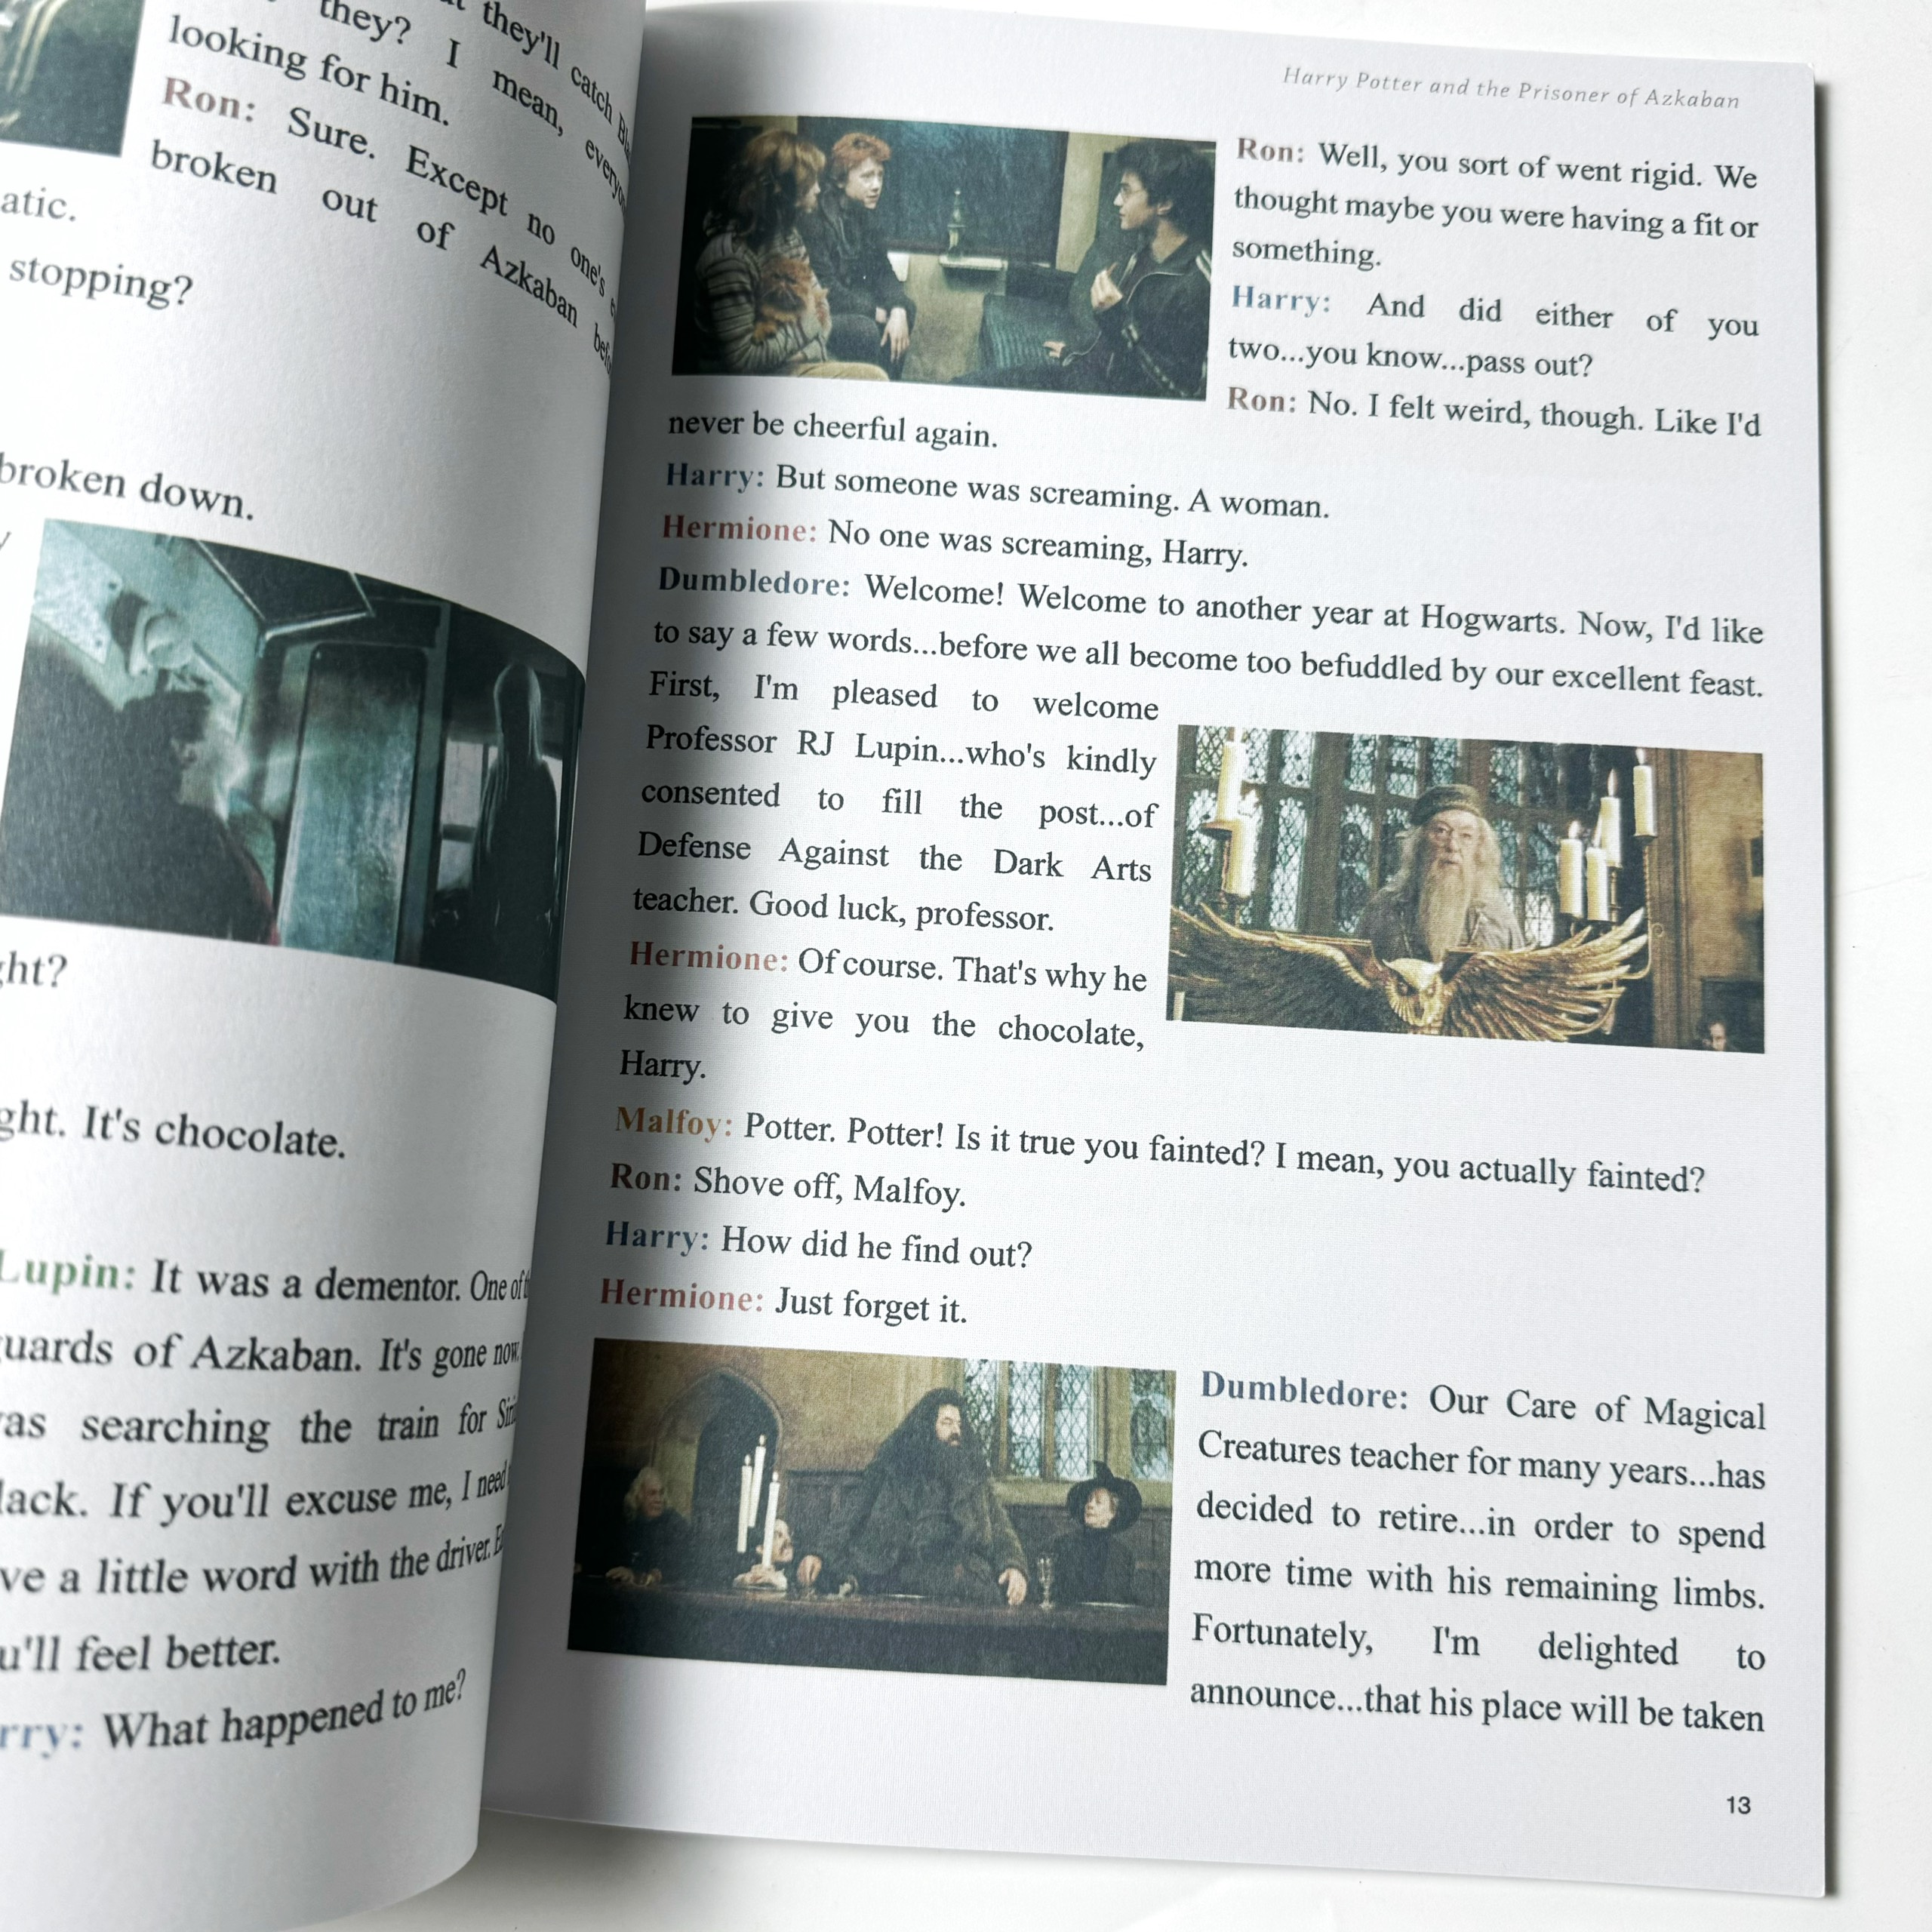 Harry Potter phiên bản Film Edition (Sách nhập) - 7 quyển kèm file nghe